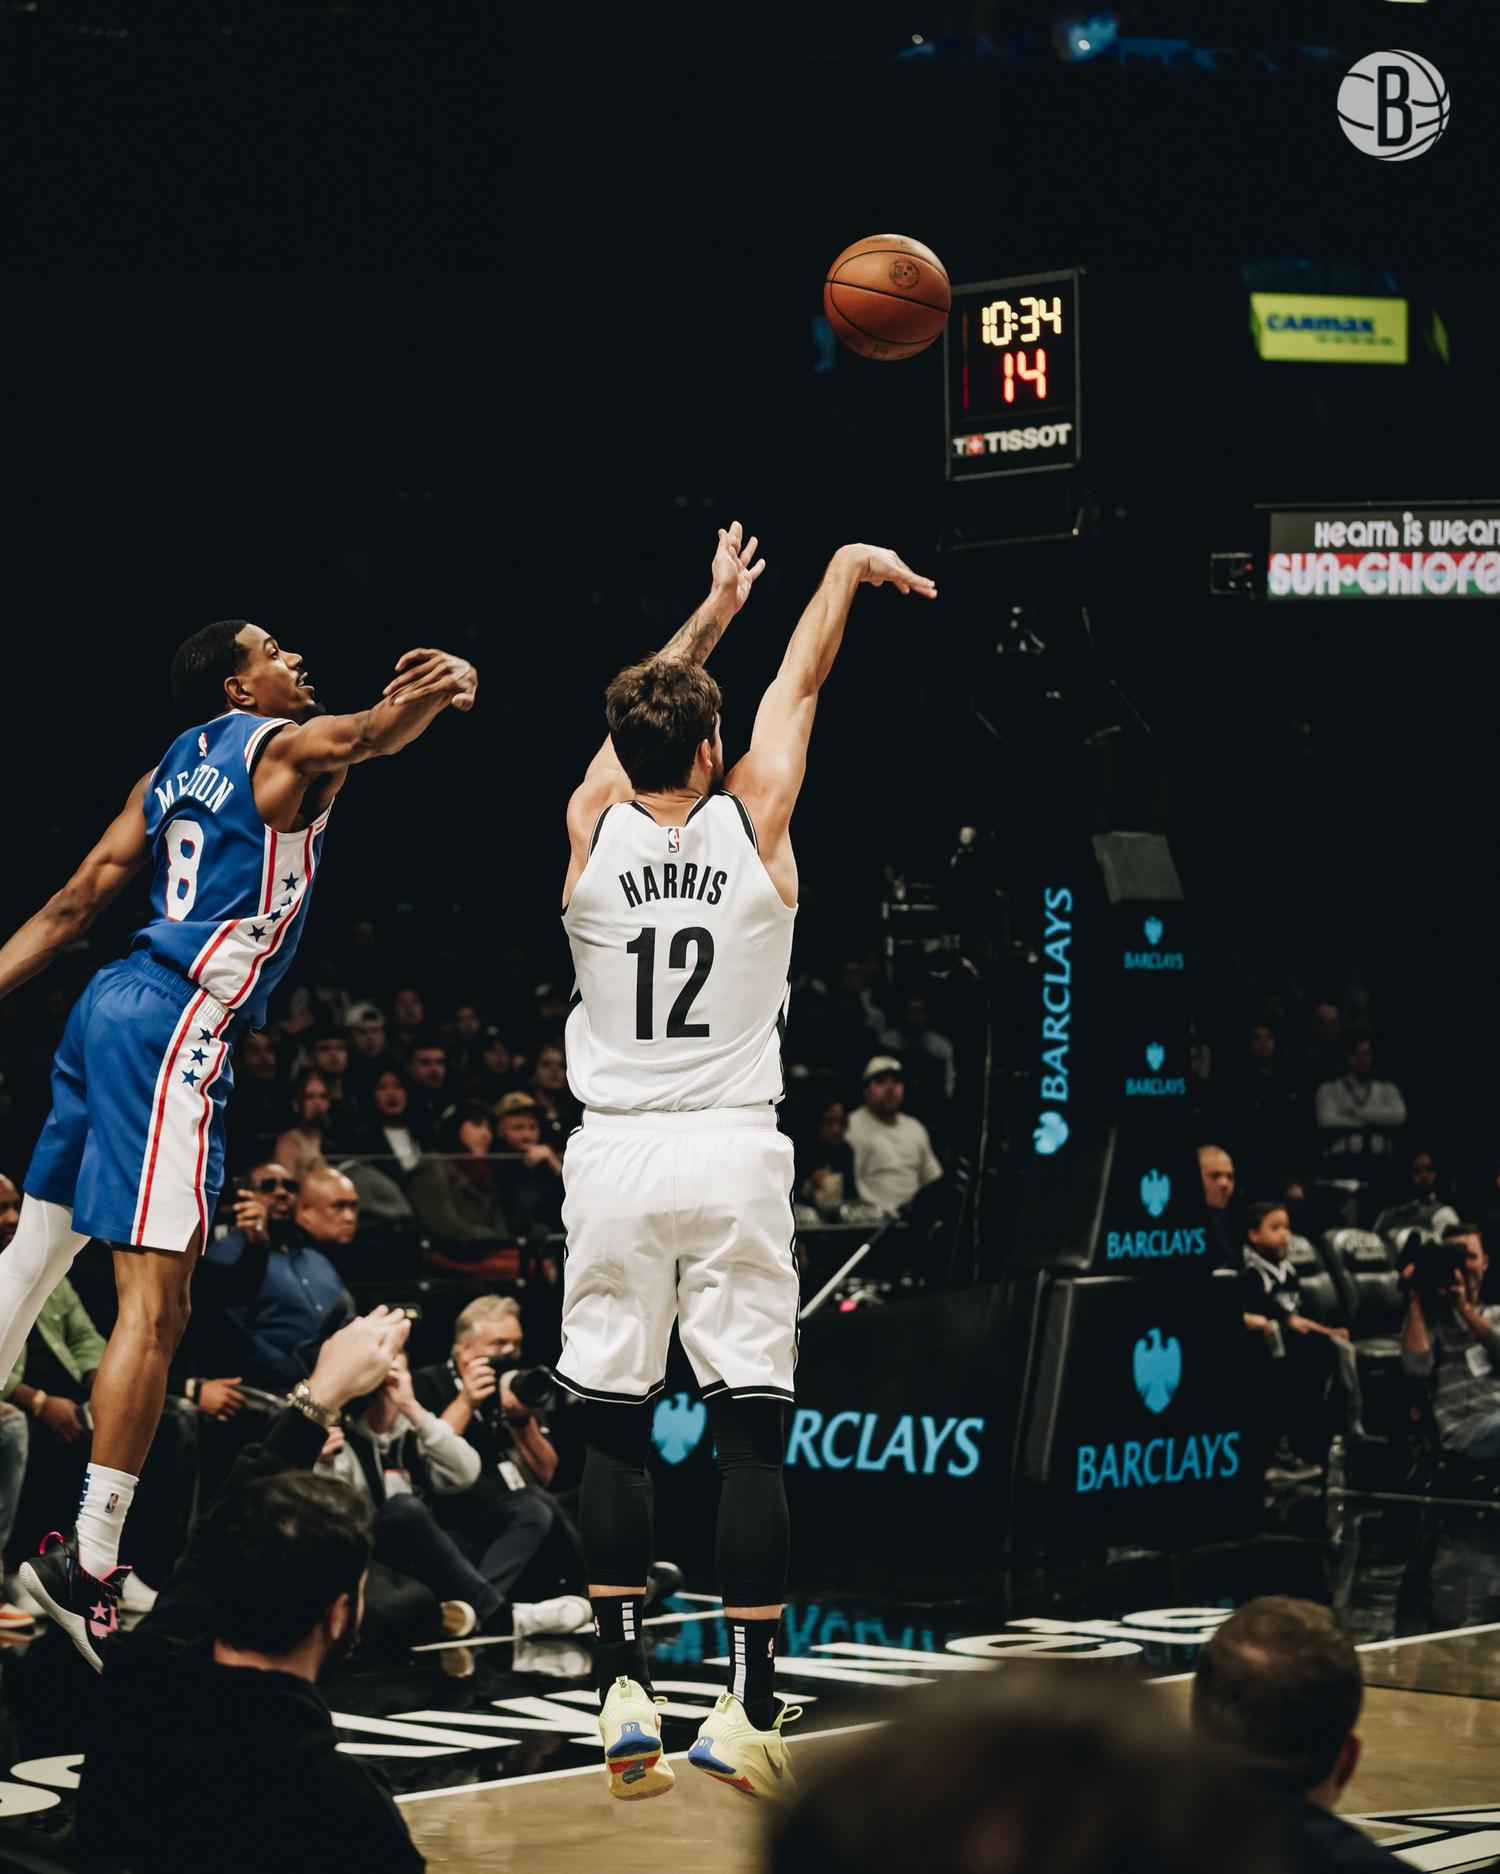 Brooklyn Nets x Miami Heat: onde assistir ao vivo e o horário do